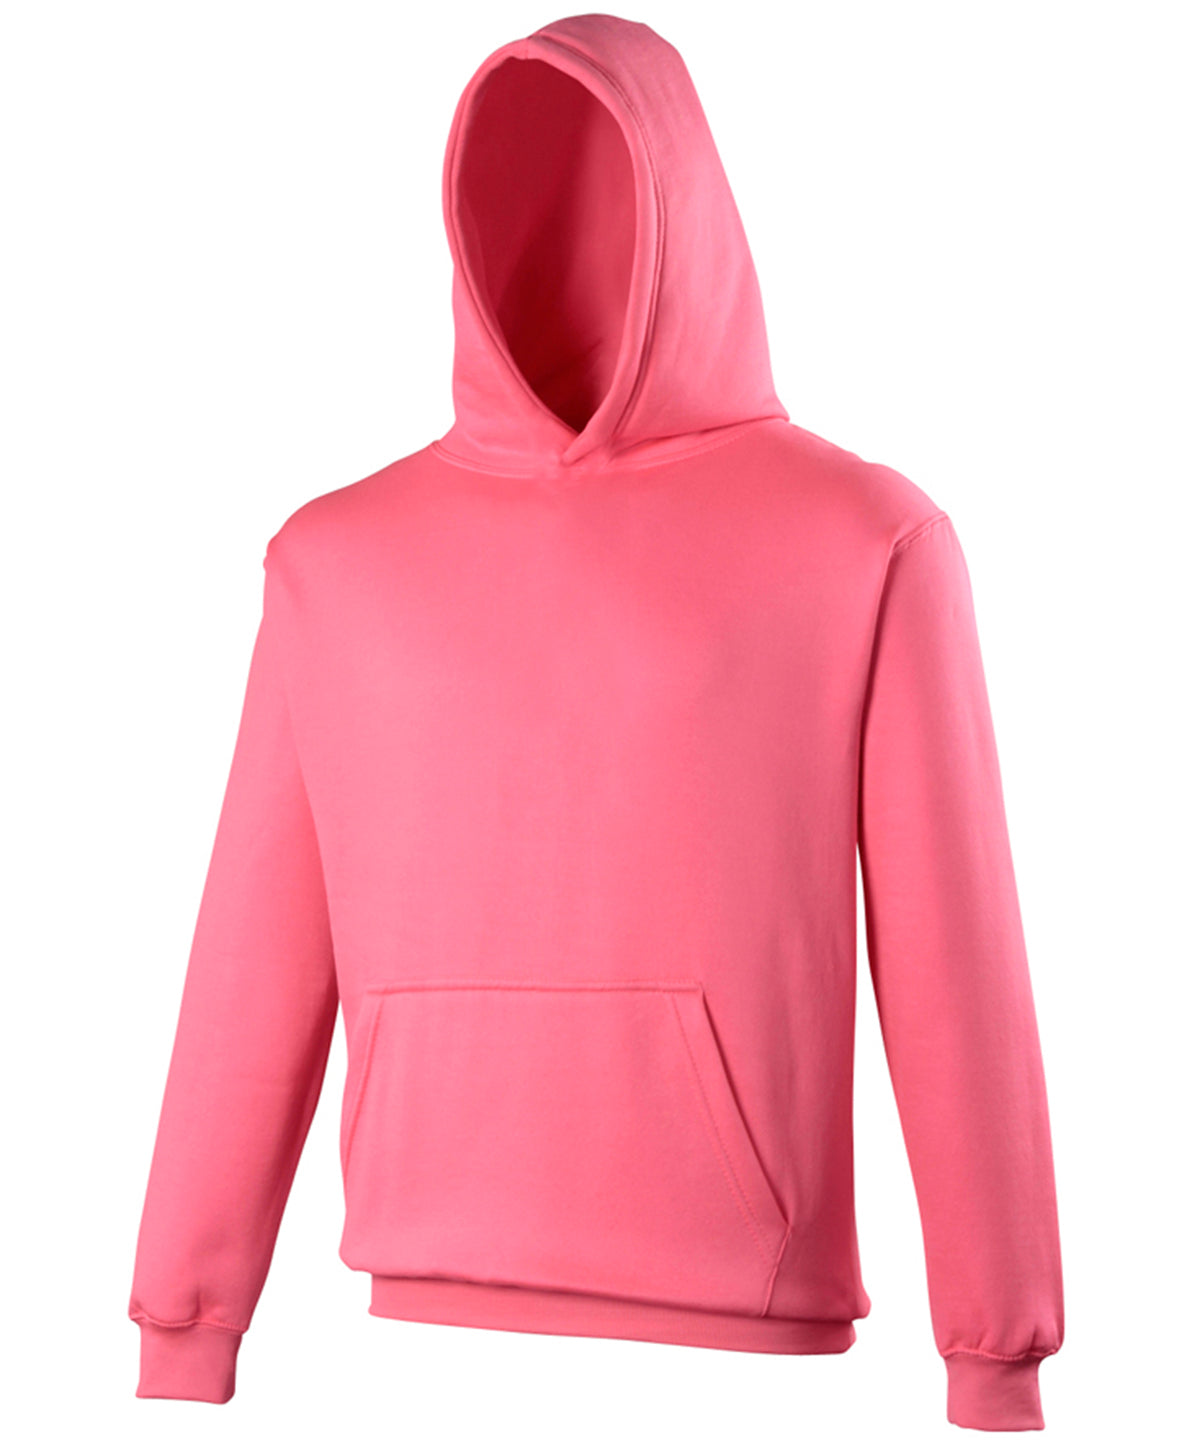 Kids electric hoodie | Electric Pink